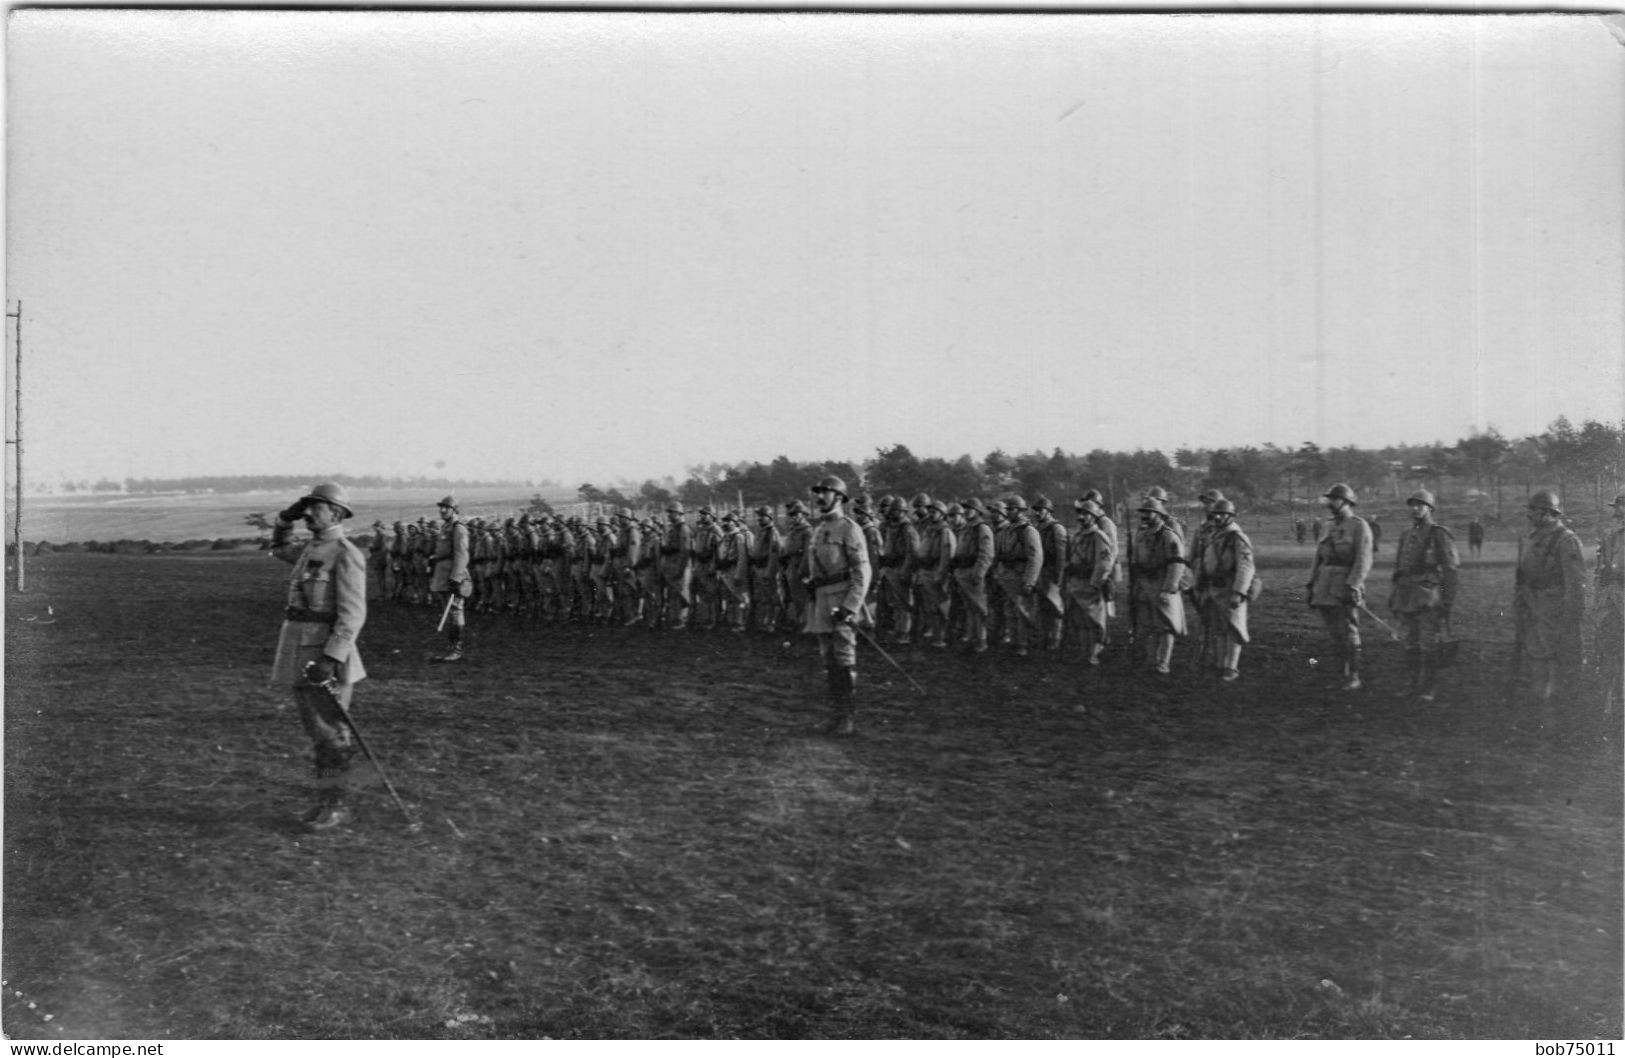 Carte Photo D'officier Et De Soldats Francais Au Garde A Vous A L'arrière Du Front En 14-18 - Krieg, Militär